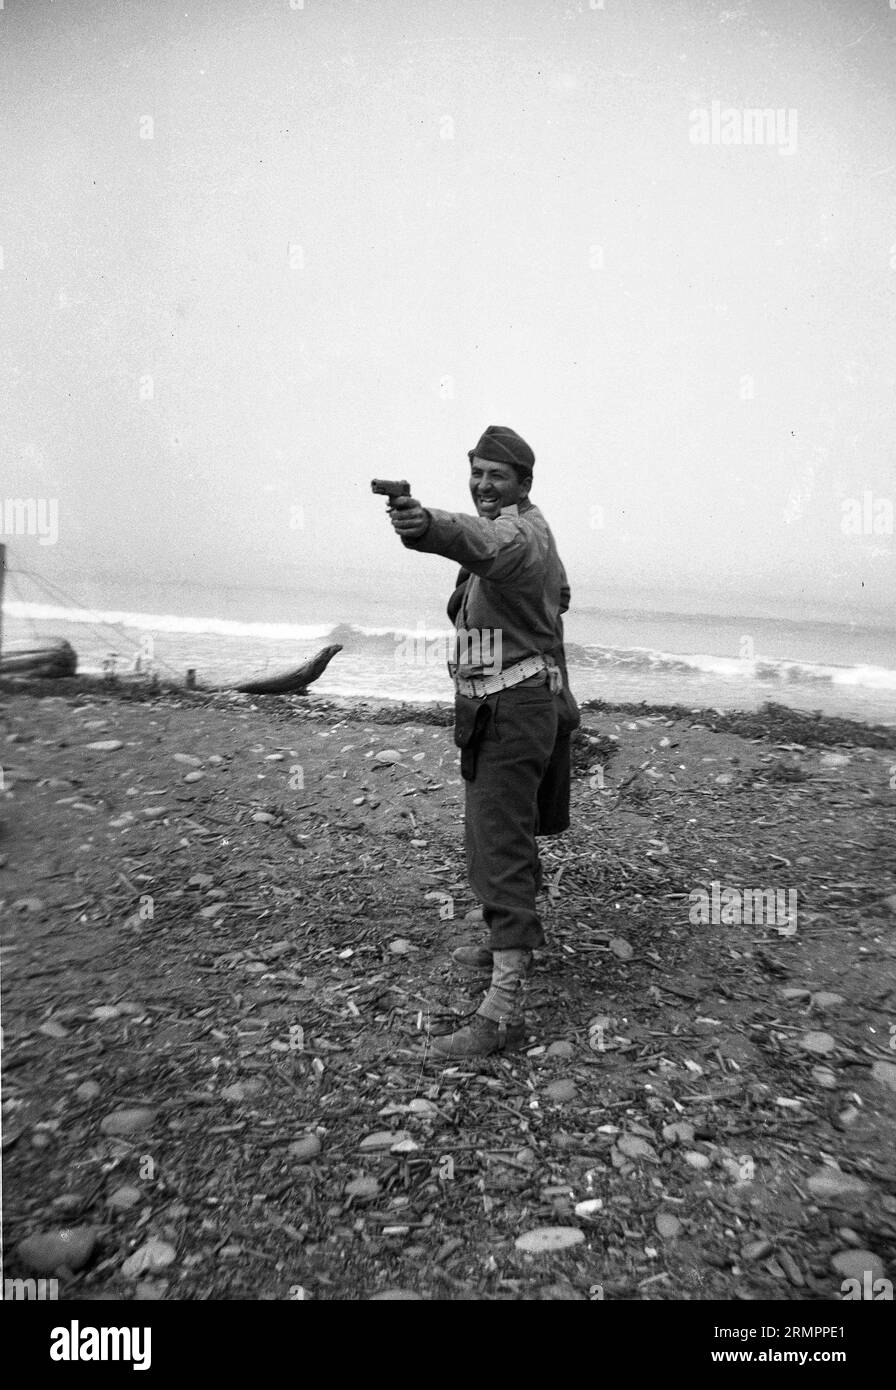 Solider posant et riant tout en pointant 1911 .45 pistolet près de l'océan. Les membres de la 114e division d’infanterie de l’armée des États-Unis s’entraînent pour combattre l’Allemagne en Europe pendant la Seconde Guerre mondiale. Banque D'Images